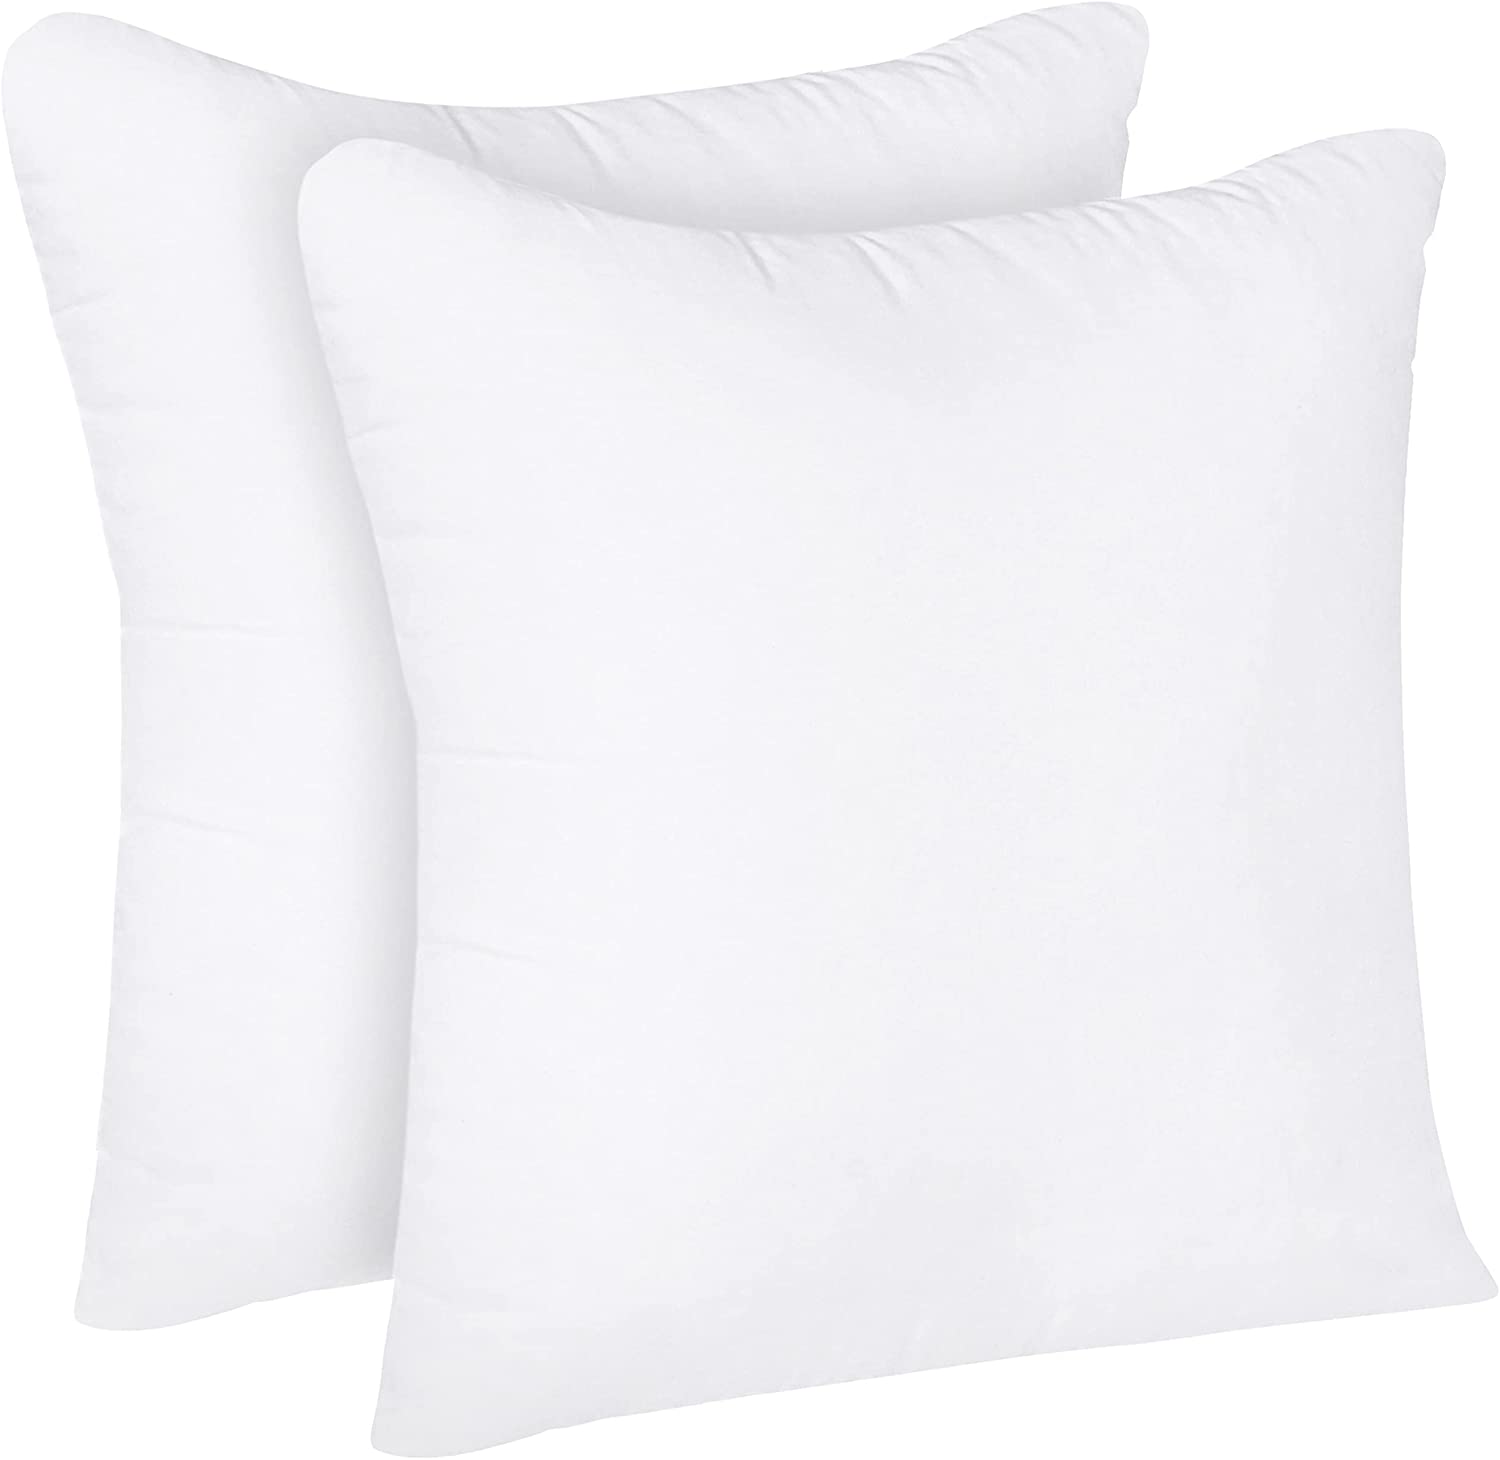 Utopia Bedding Throw Pillows (Set of 4, White), 18 x 18 Inches